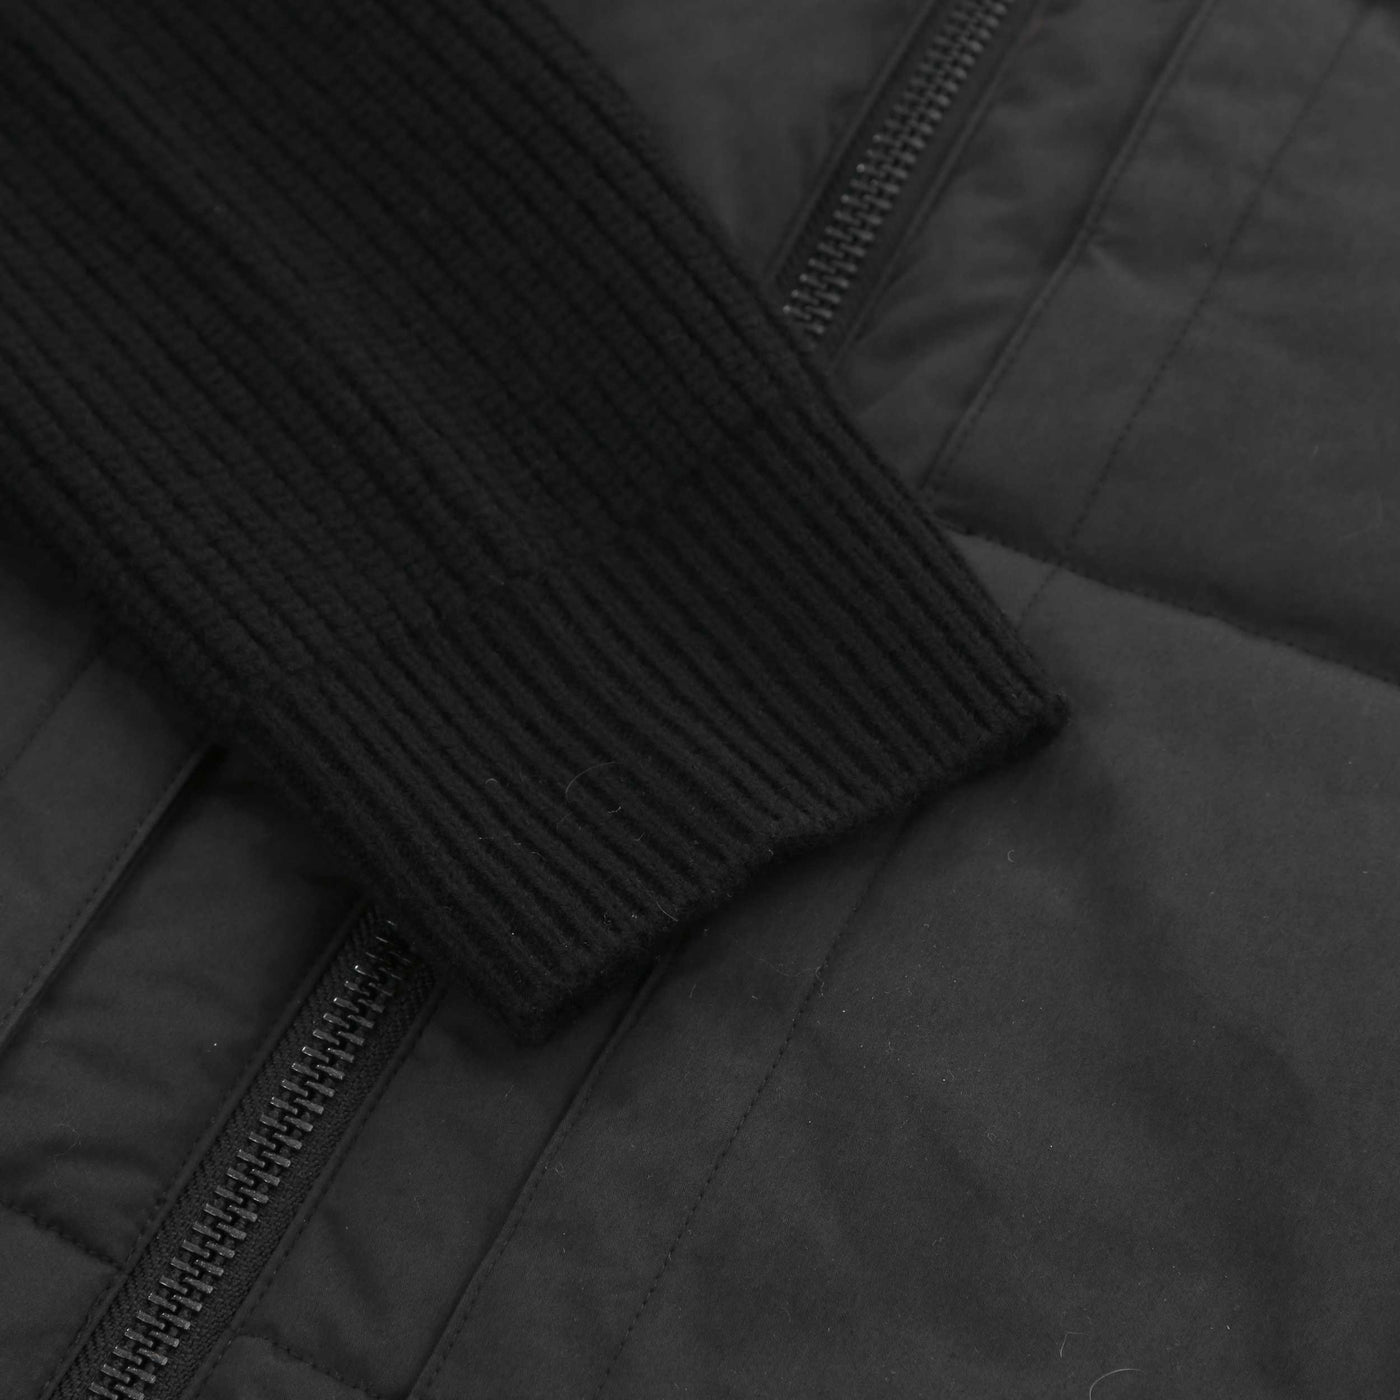 Belstaff Hatfield Jacket in Black Sleeve